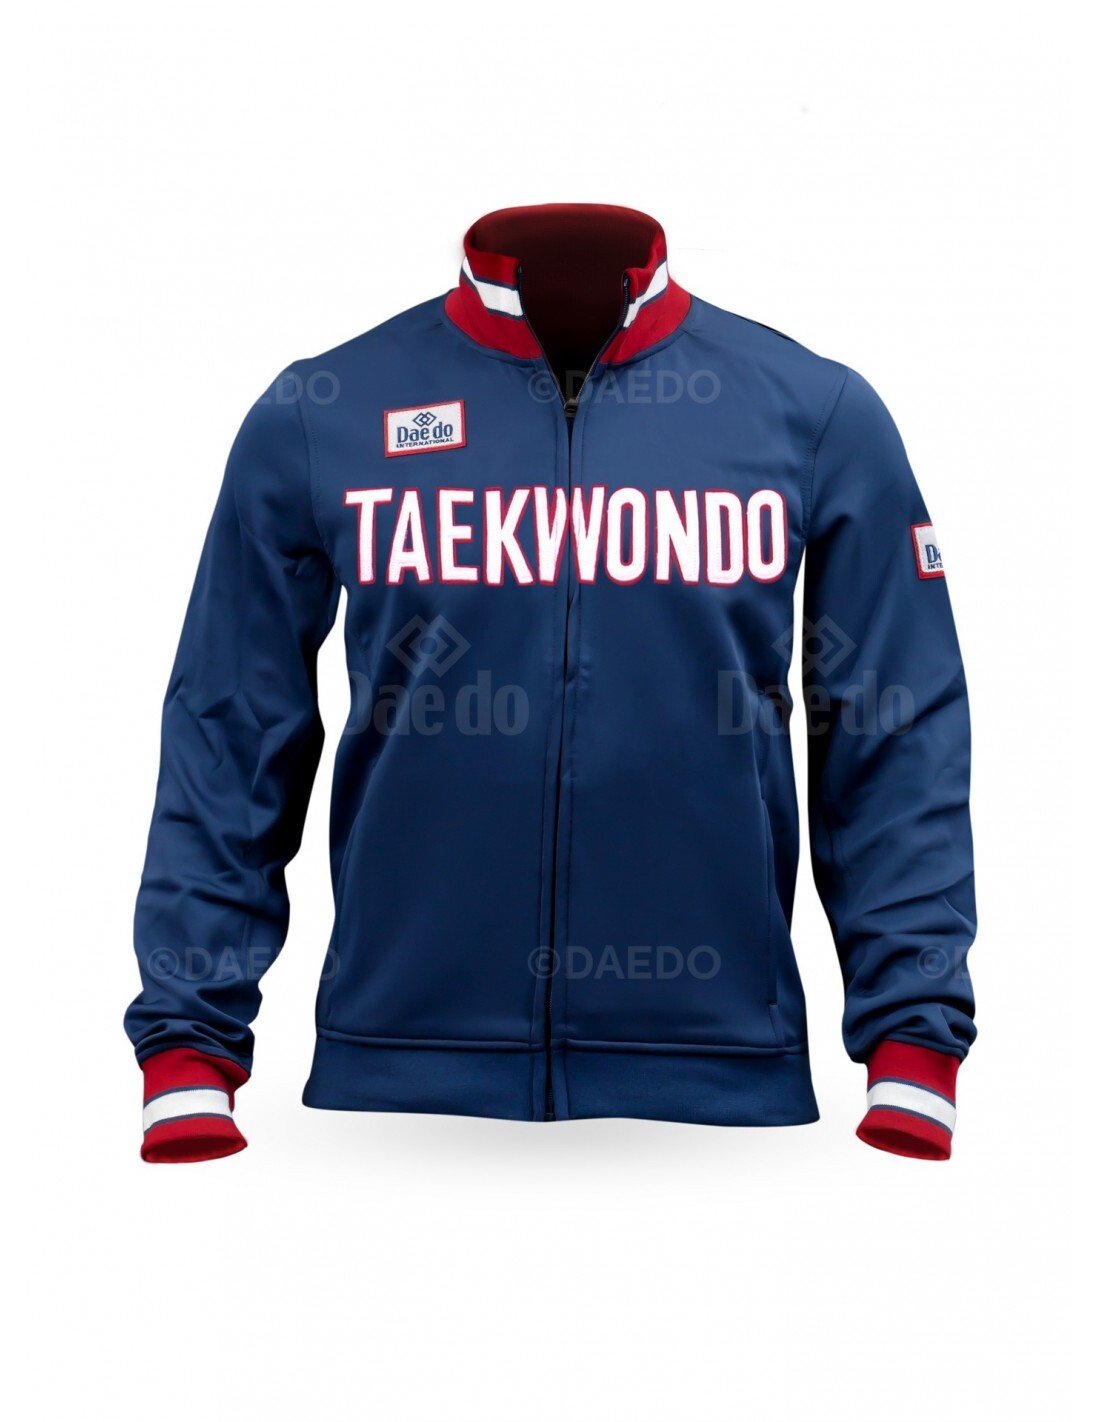 DAEDO - Slim Taekwondo Jacket - Navy Blue - Extra Large